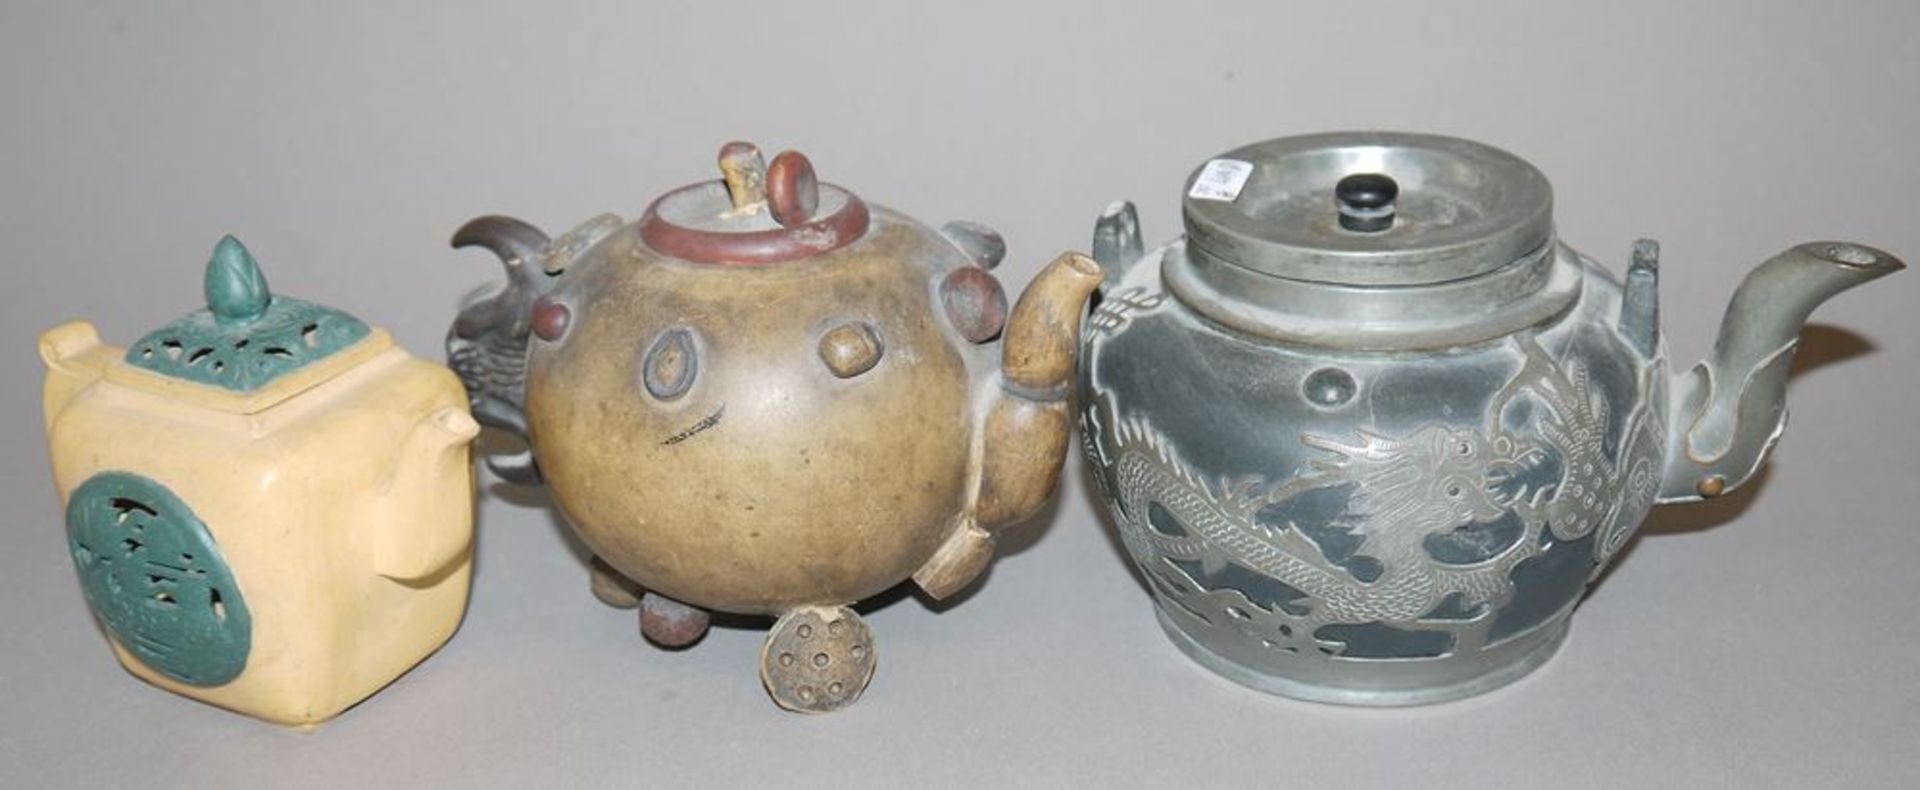 Sechs chinesische Yixing-Teekannen der Qing- und Republik-Zeiten - Image 2 of 3